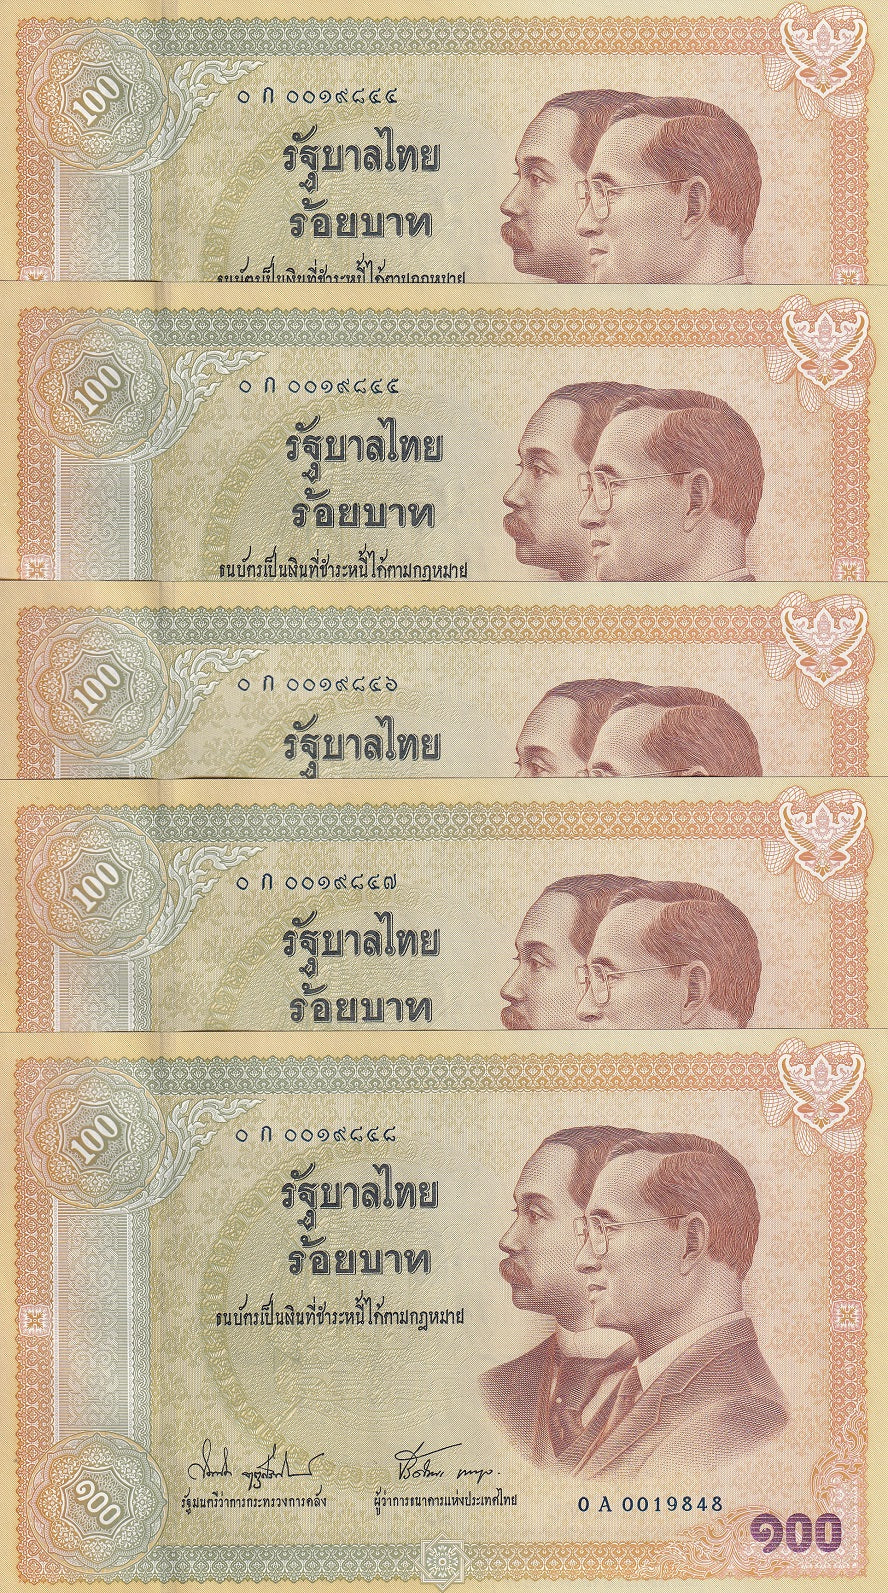 Thailand 100 BAHT ND 2002 Comm. P 110 UNC LOT 5 PCS